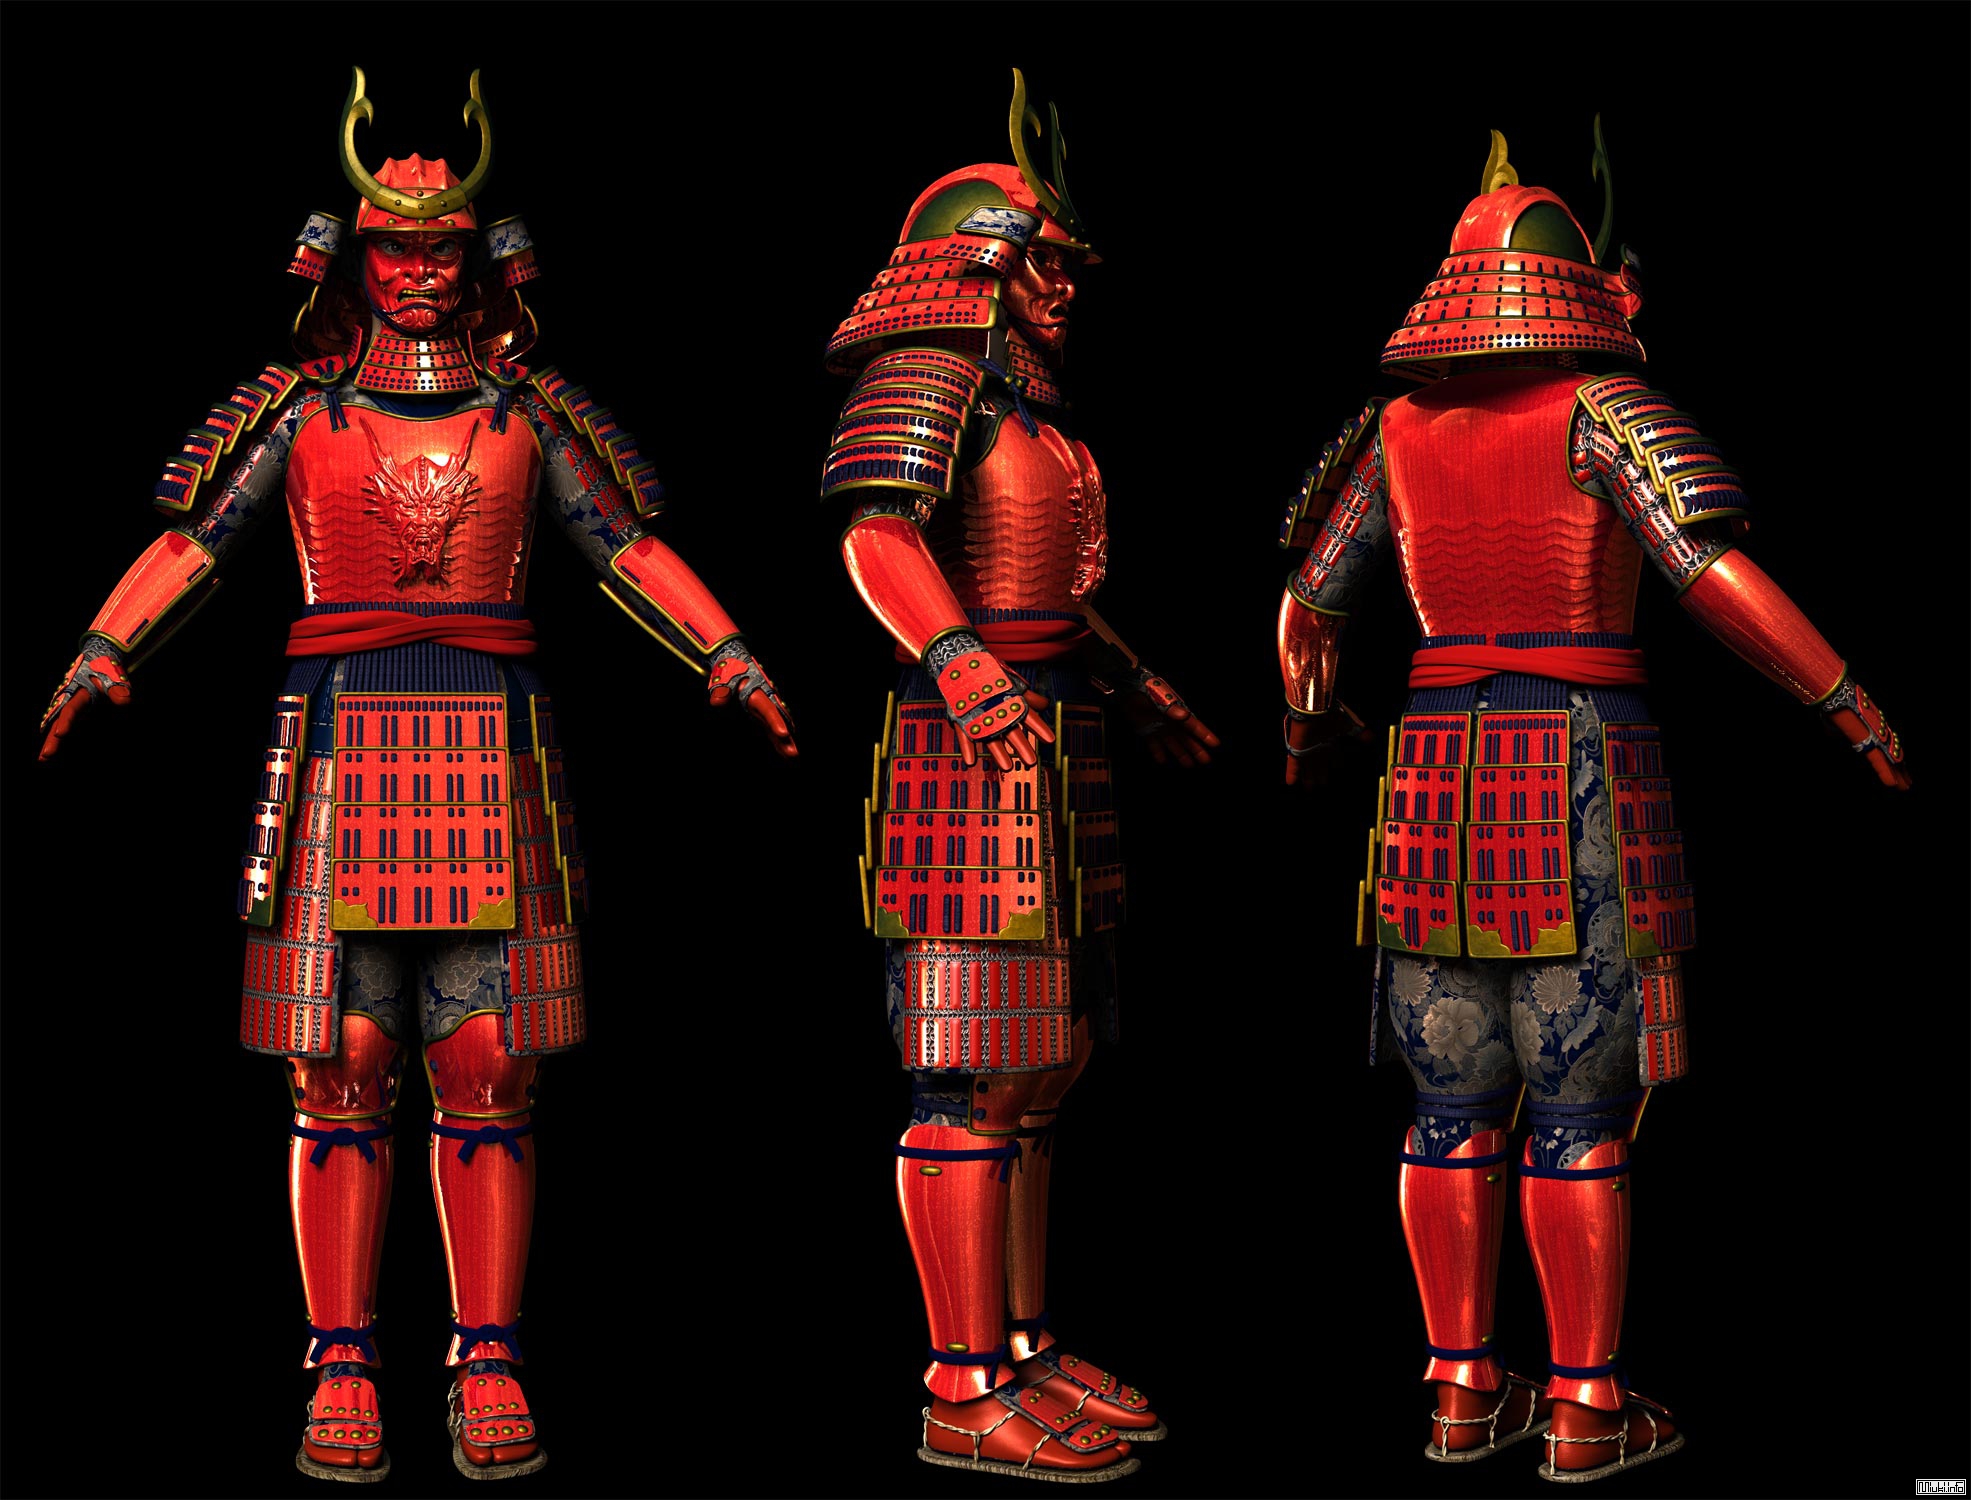 костюм самурая